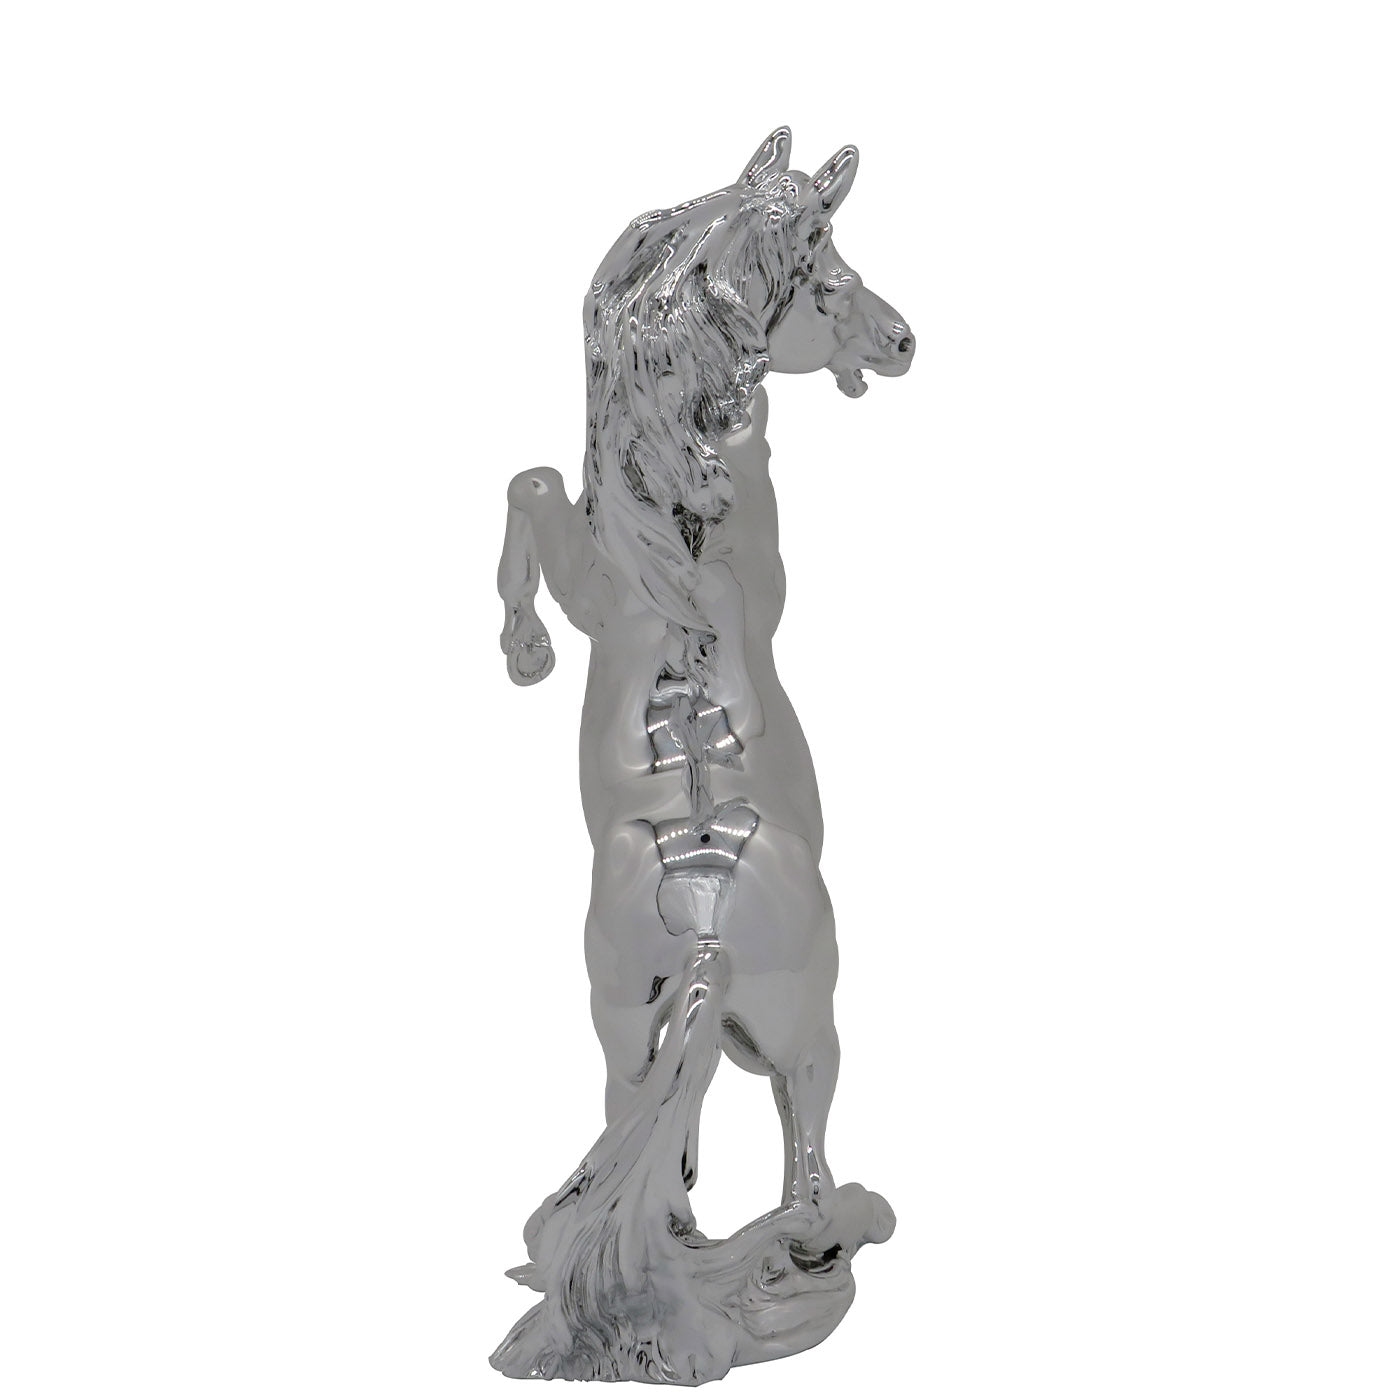 Cavallo Rampante Statuette - Alternative view 4